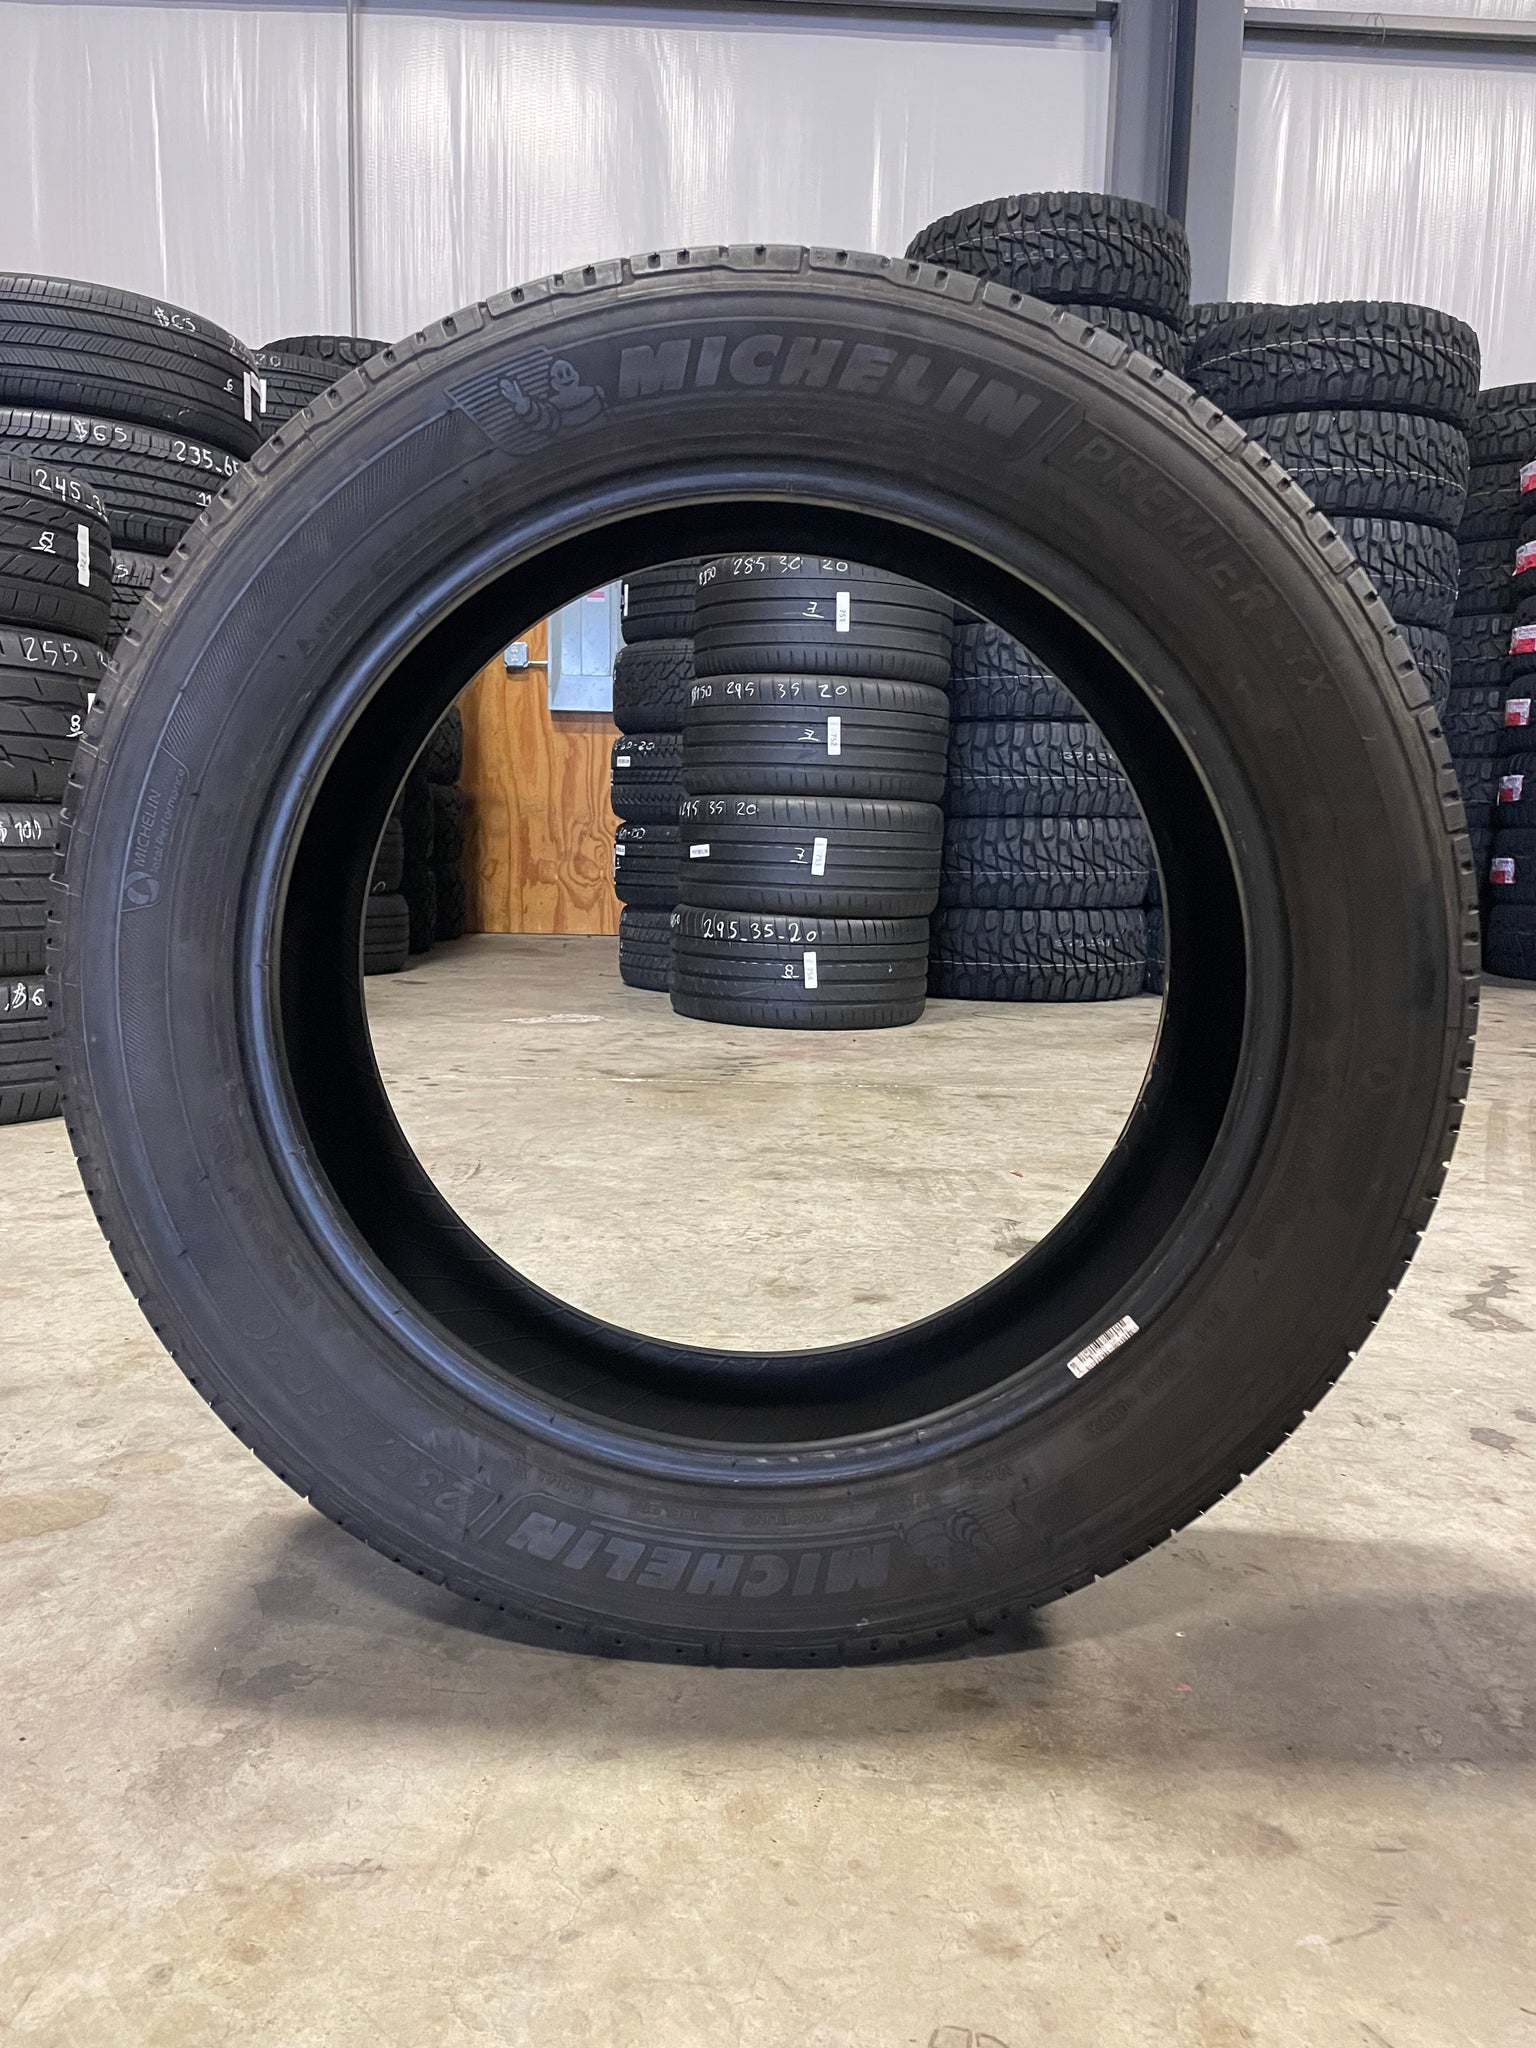 SINGLE 235/55R20 Michelin Premier LTX 102 H SL - Premium Used Tires